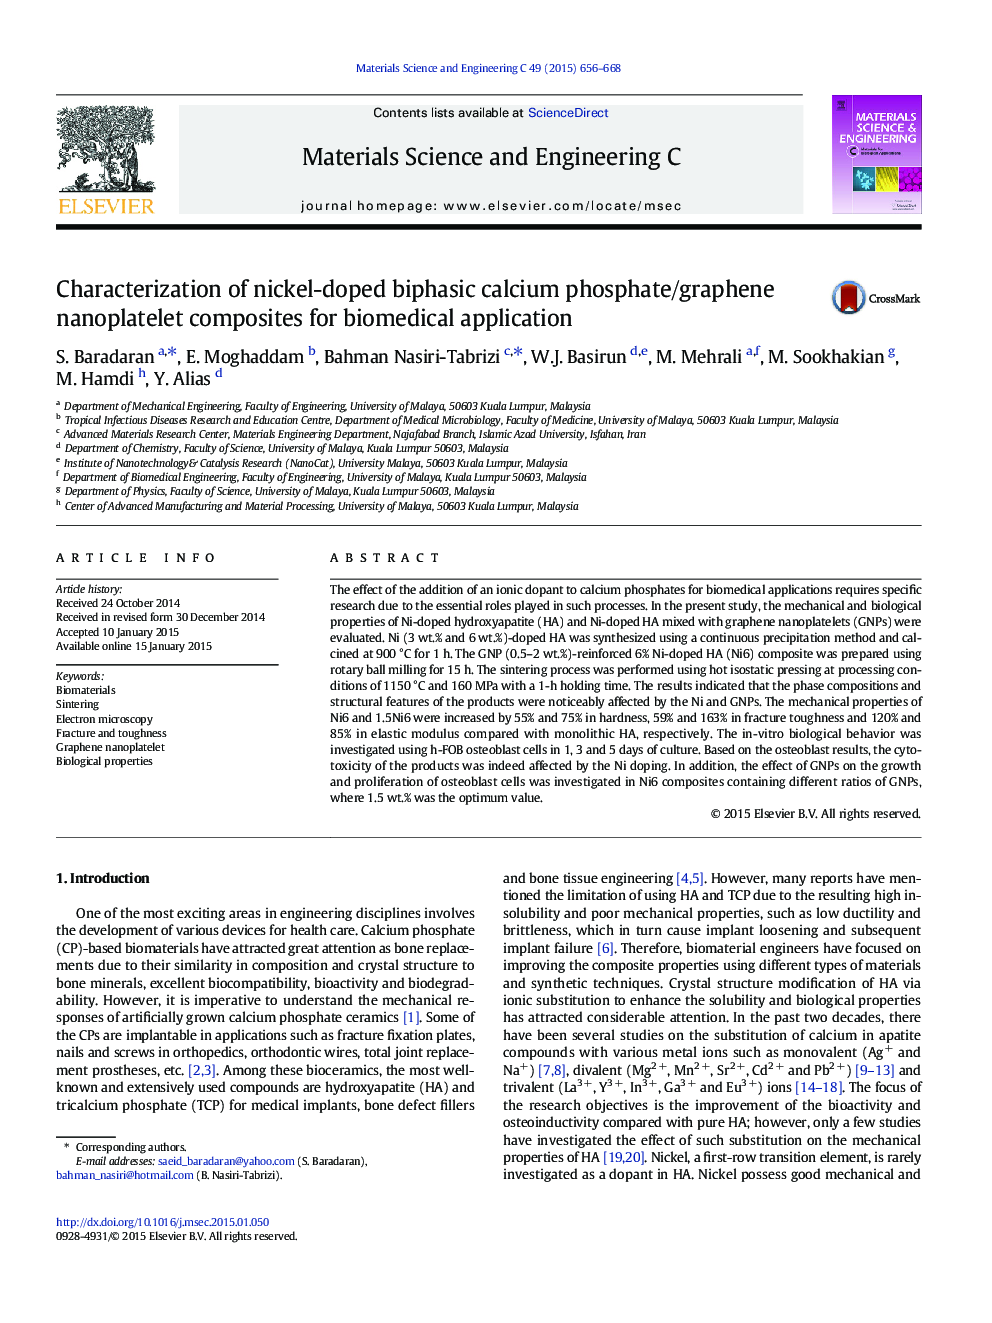 خصوصیات کامپوزیت های نانو پالتکتیو دو فاز نیکل دوپا دار دو طرفه برای کاربرد بیولوژیکی 